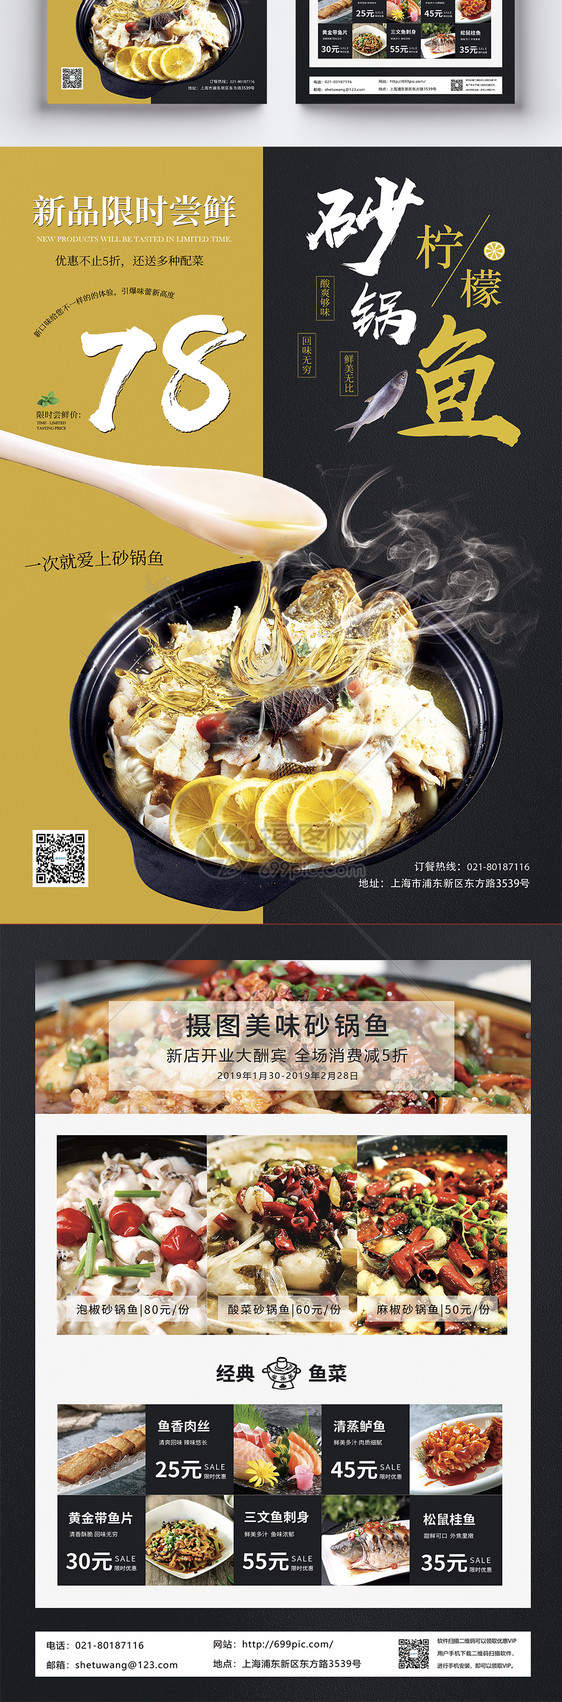 柠檬砂锅鱼促销宣传单图片